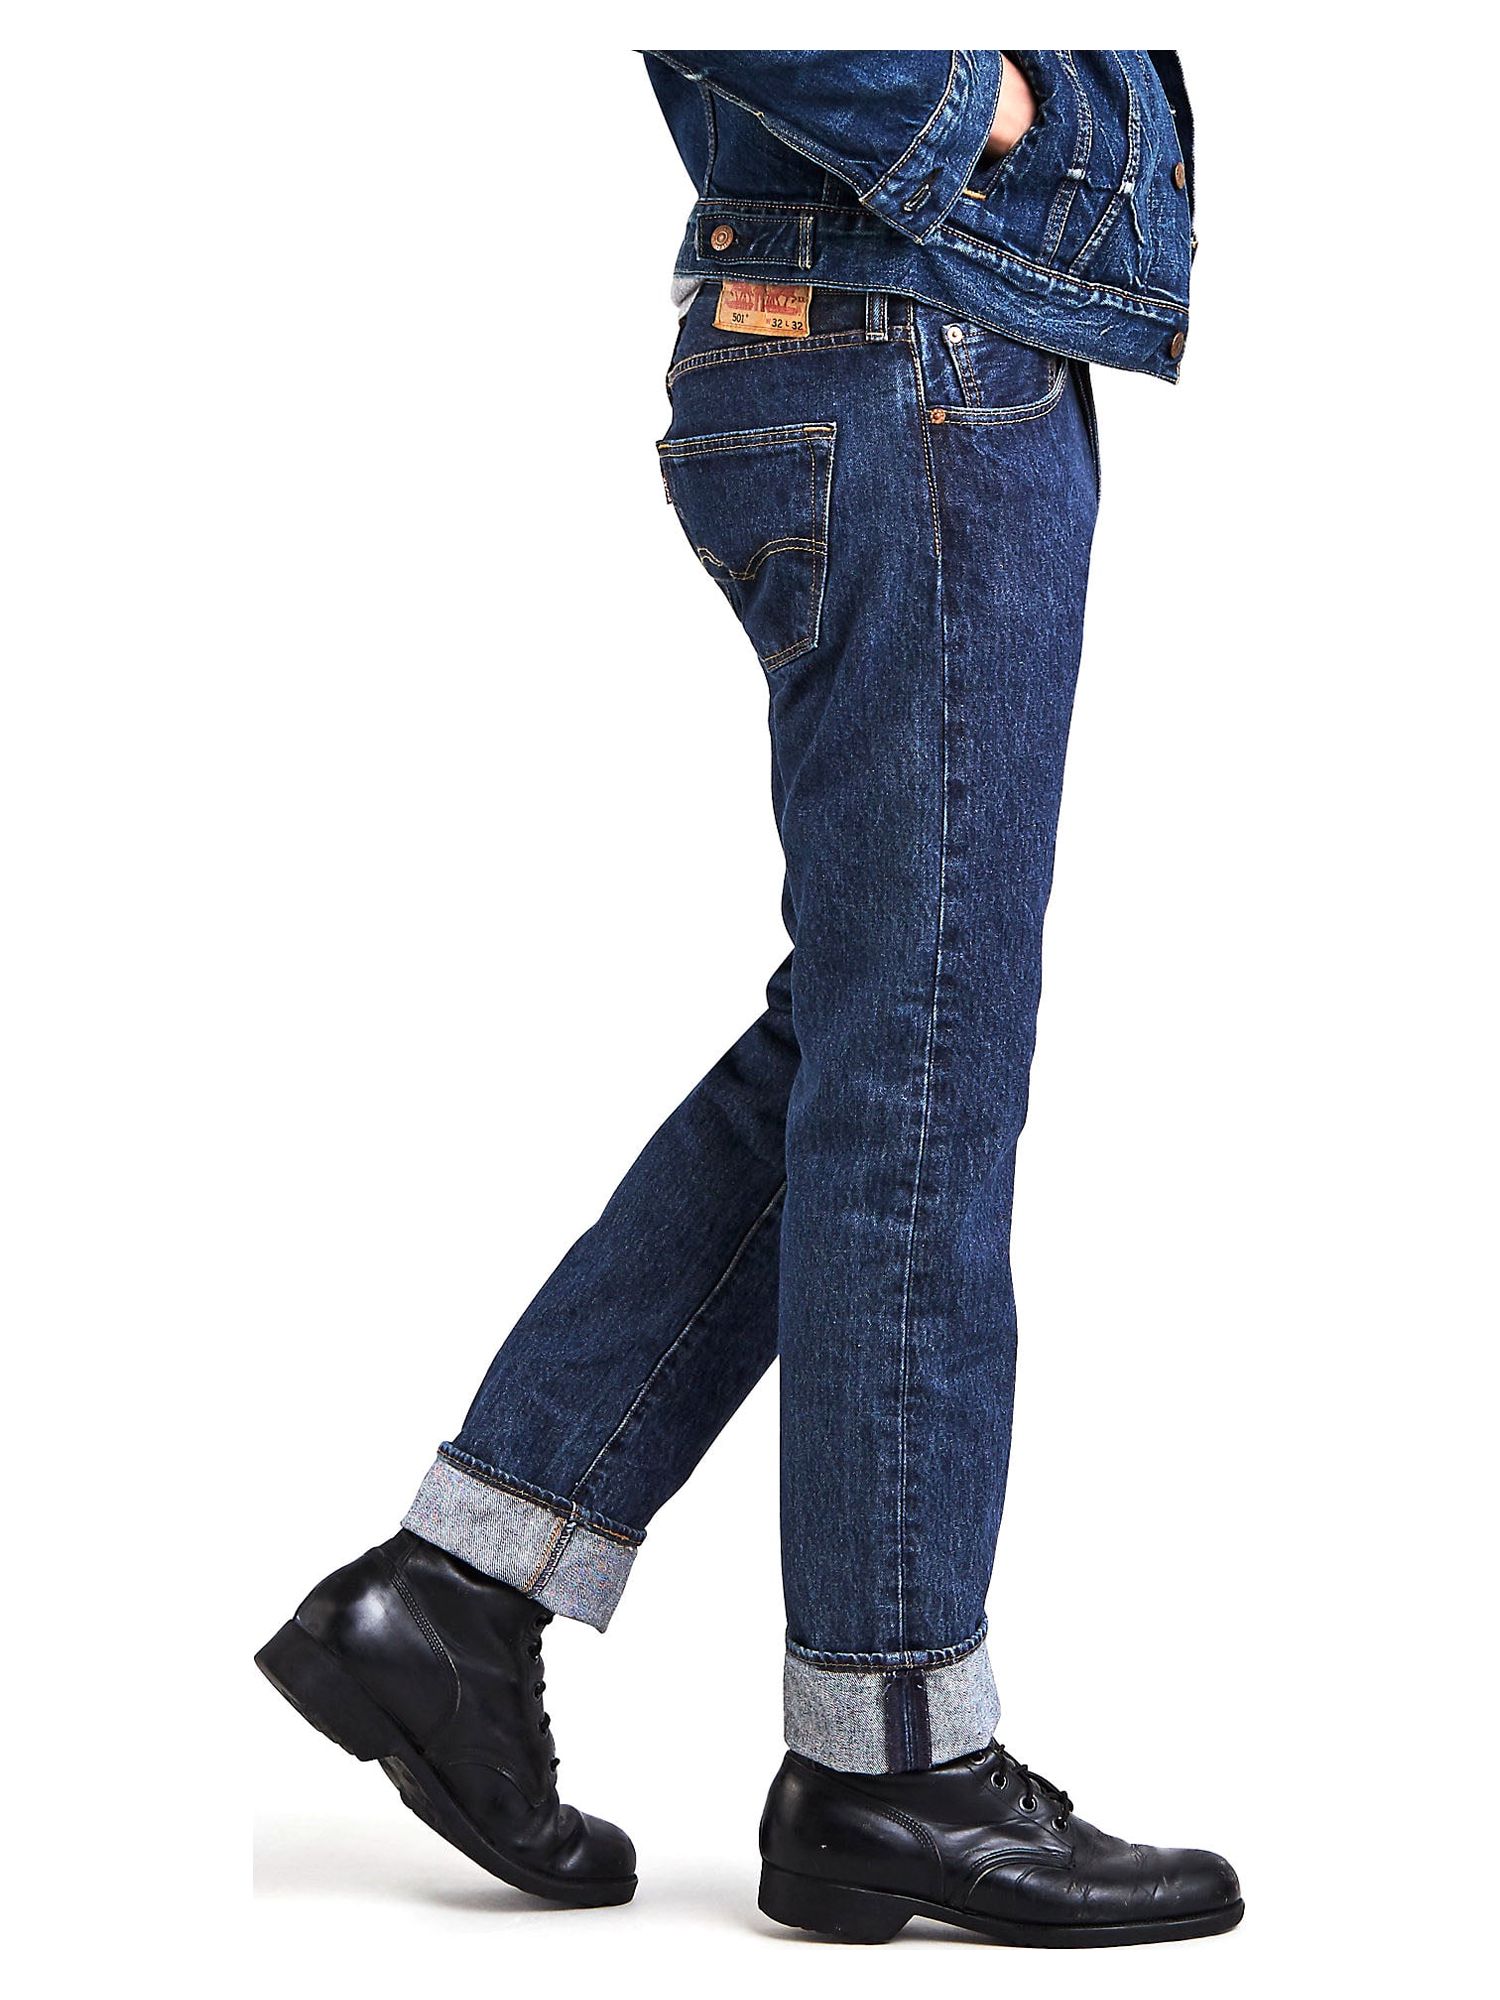 Levi's Men's 501 Original Fit Jeans - image 2 of 9